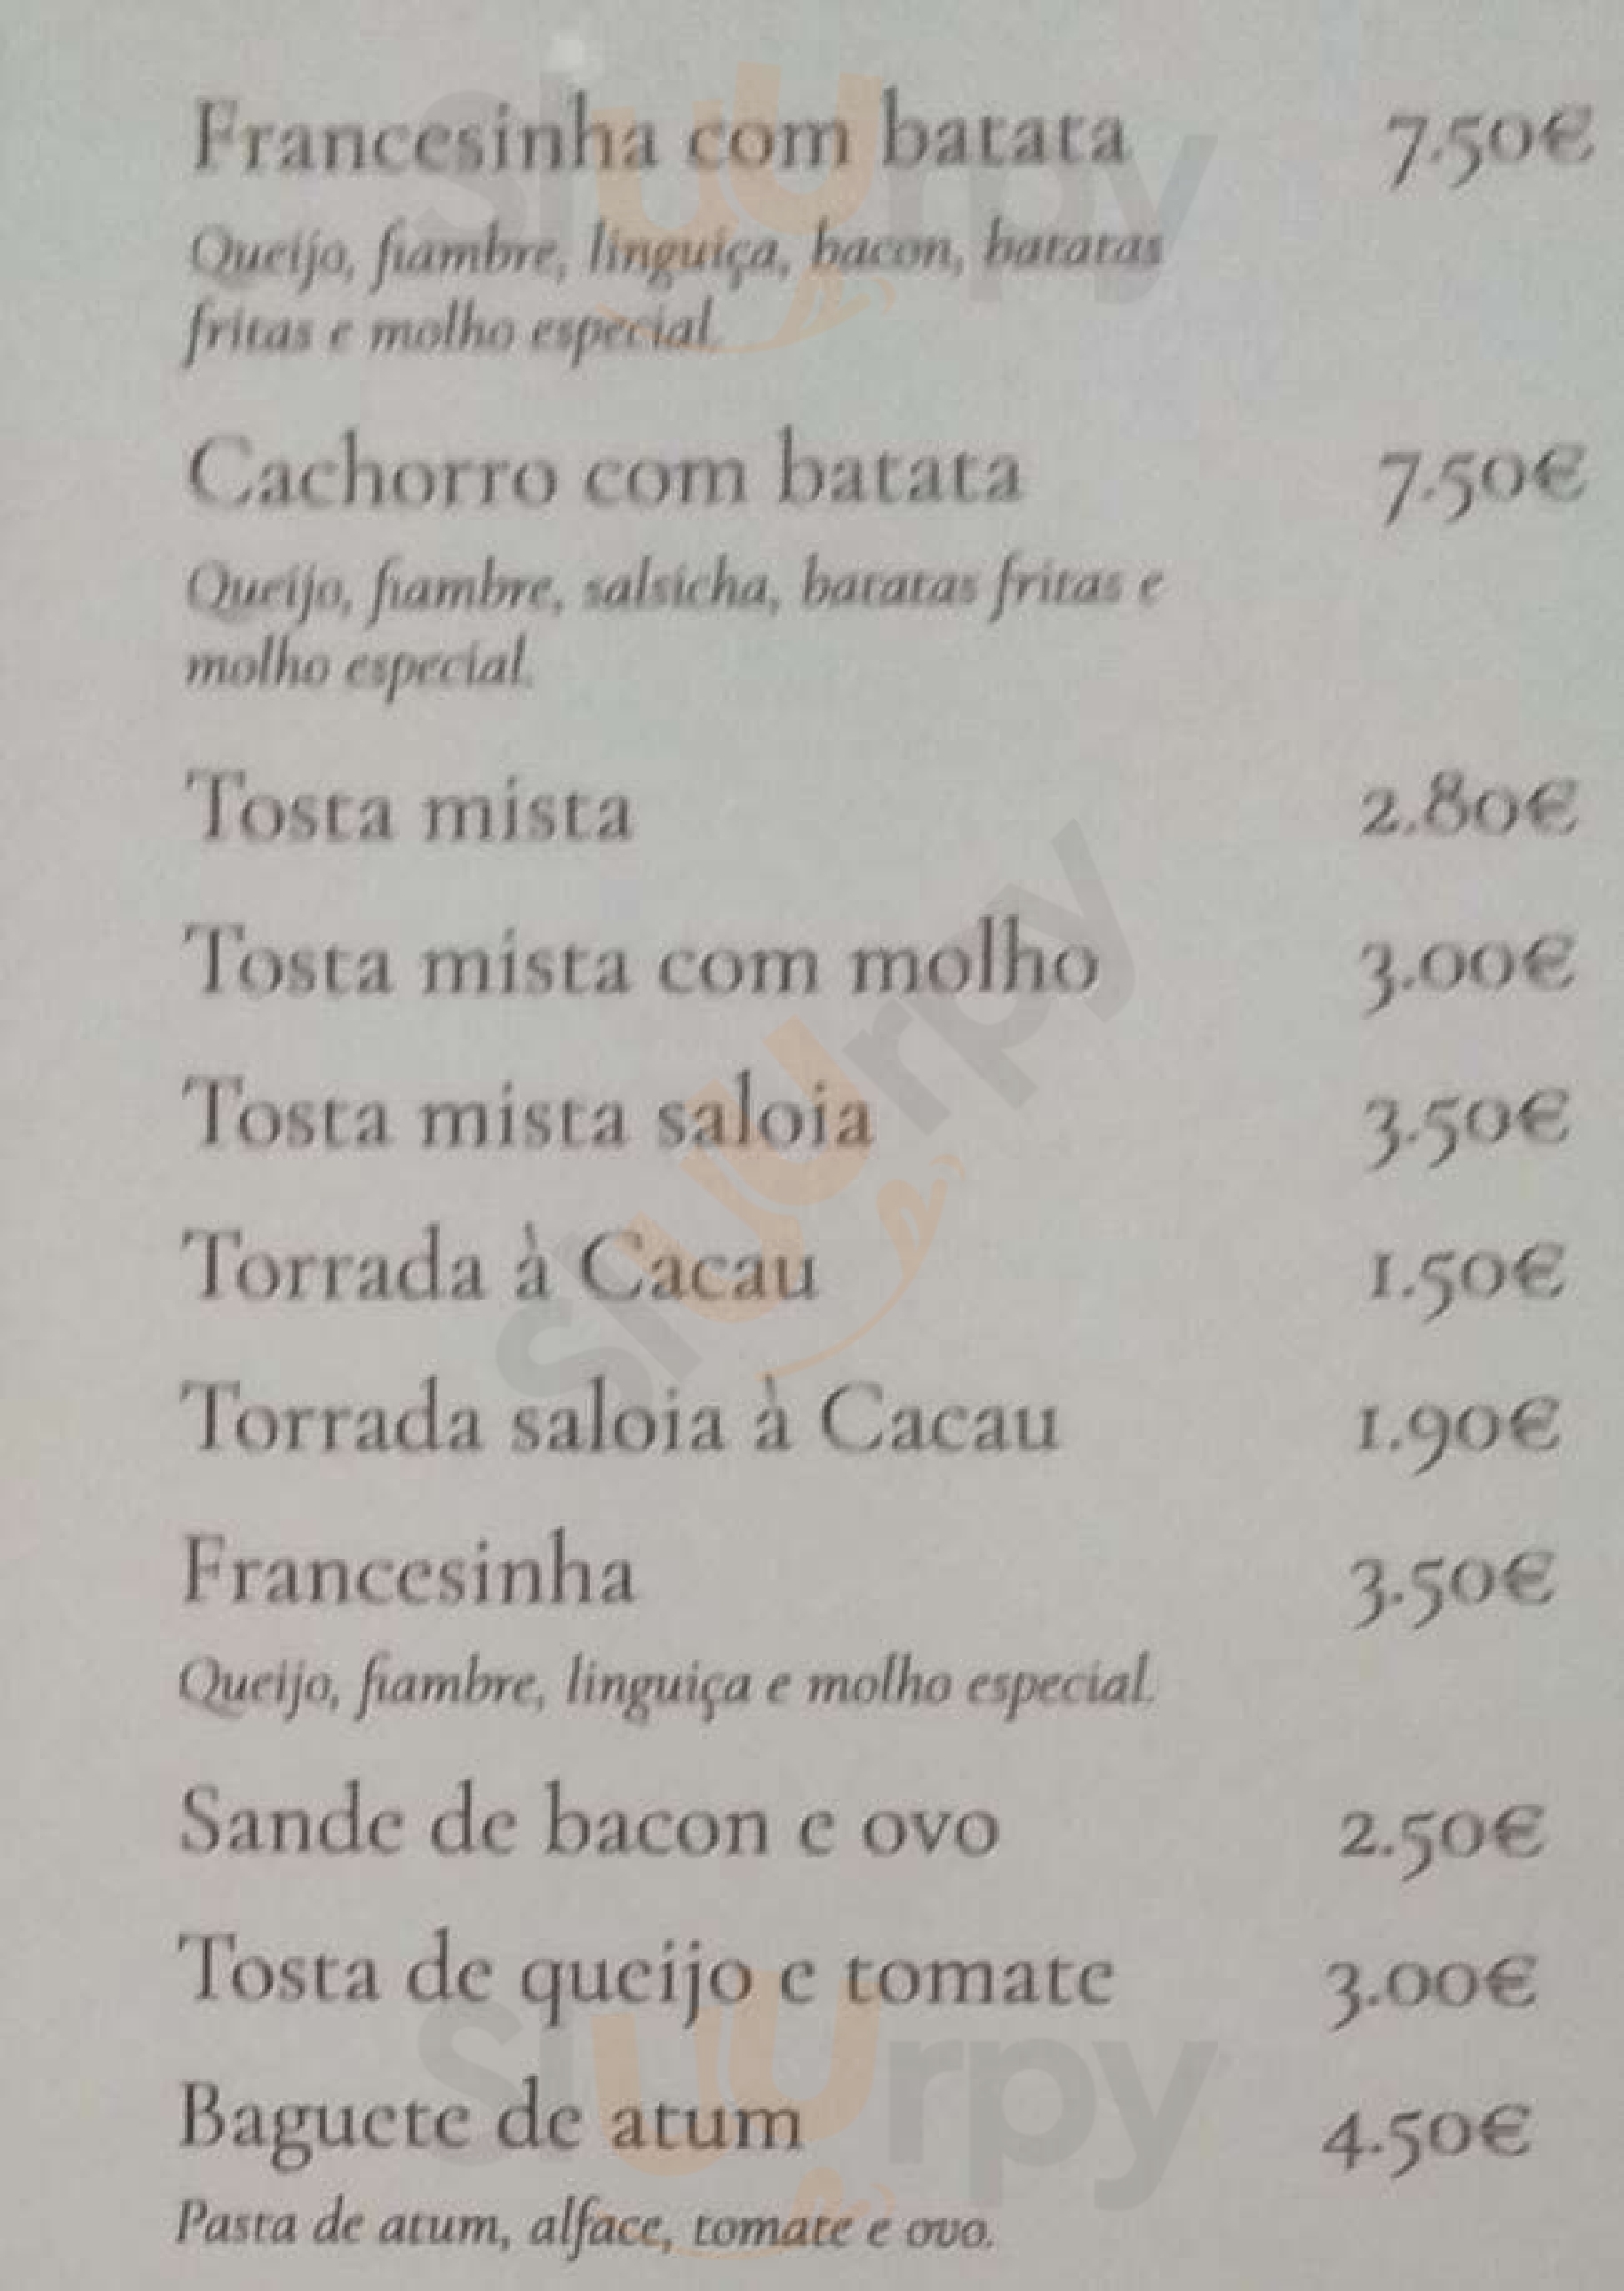 Cacau - Bar & Grill Vila do Conde Menu - 1